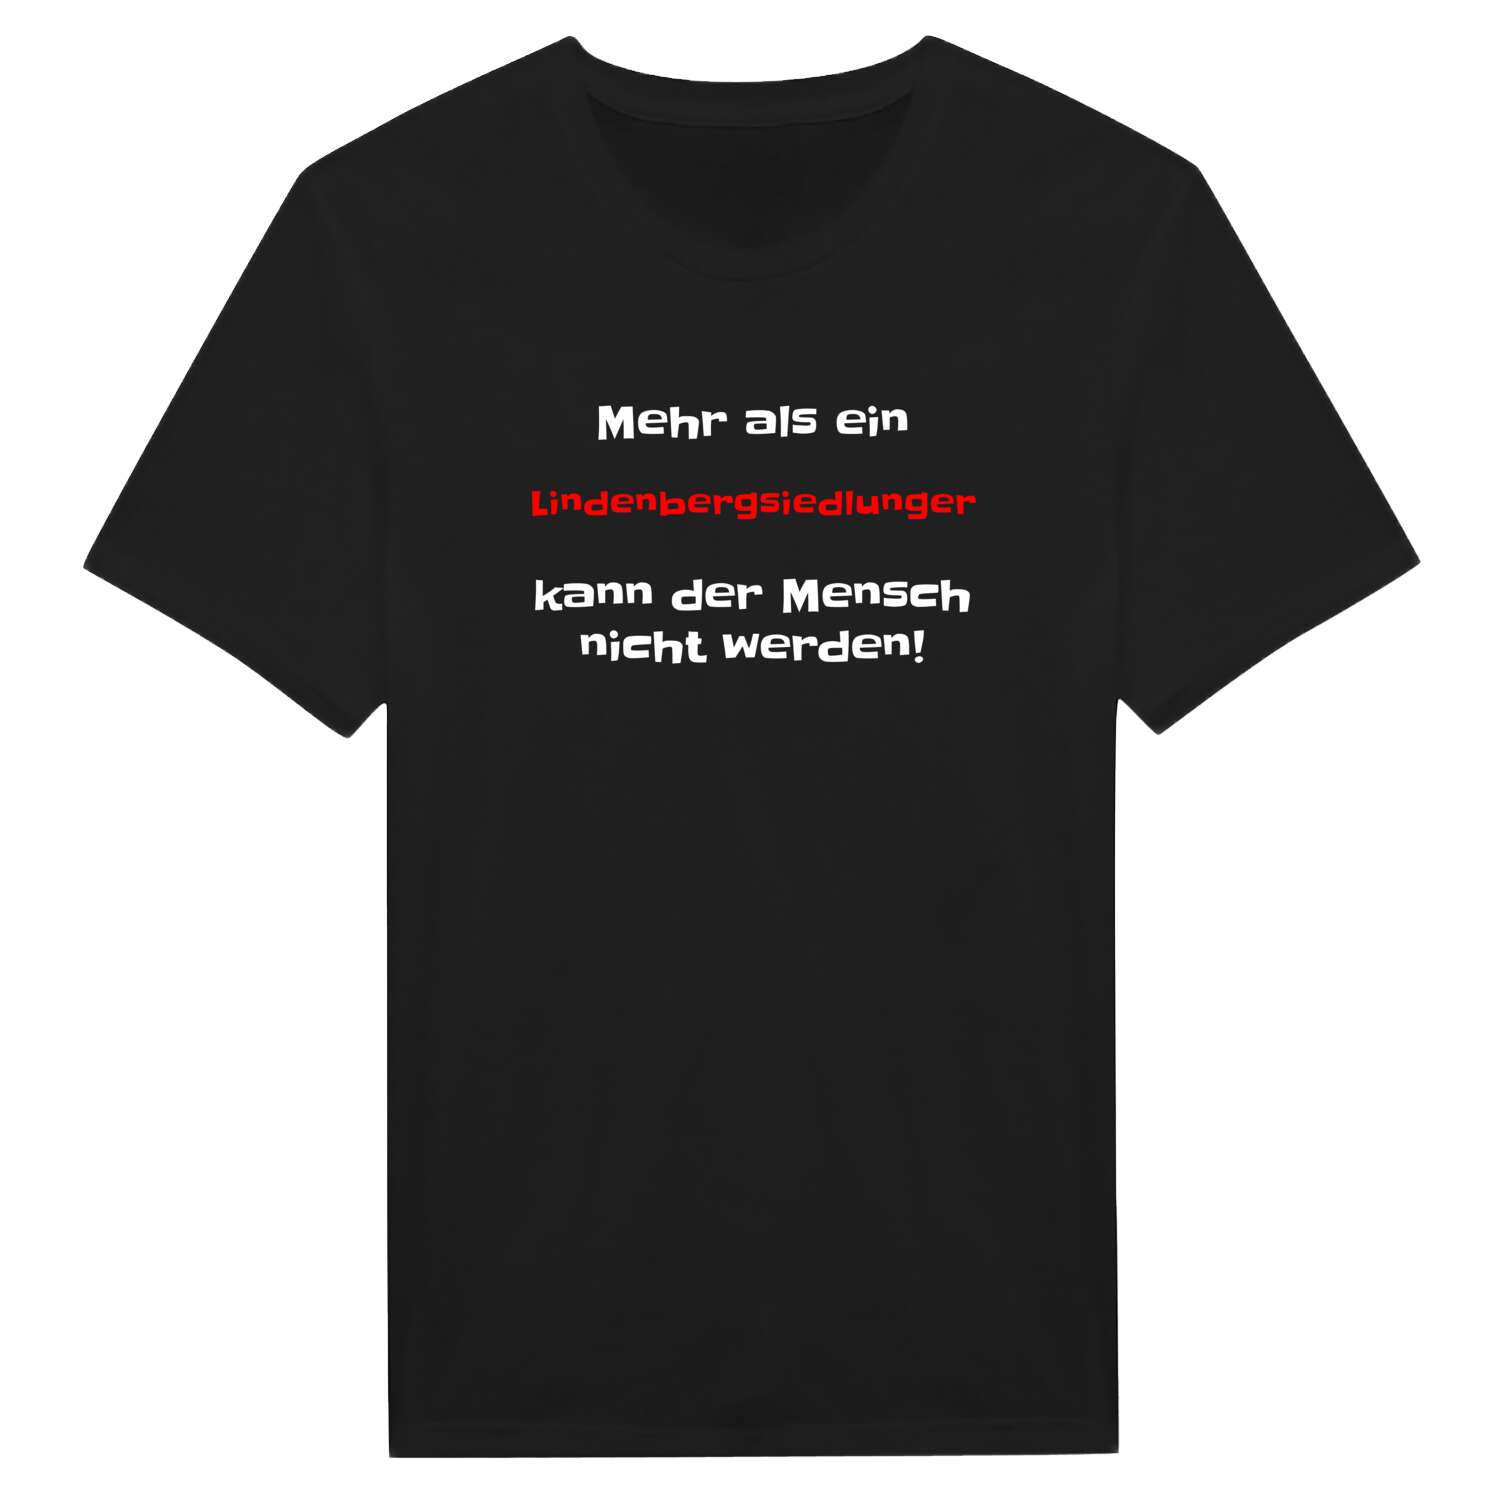 Lindenbergsiedlung T-Shirt »Mehr als ein«